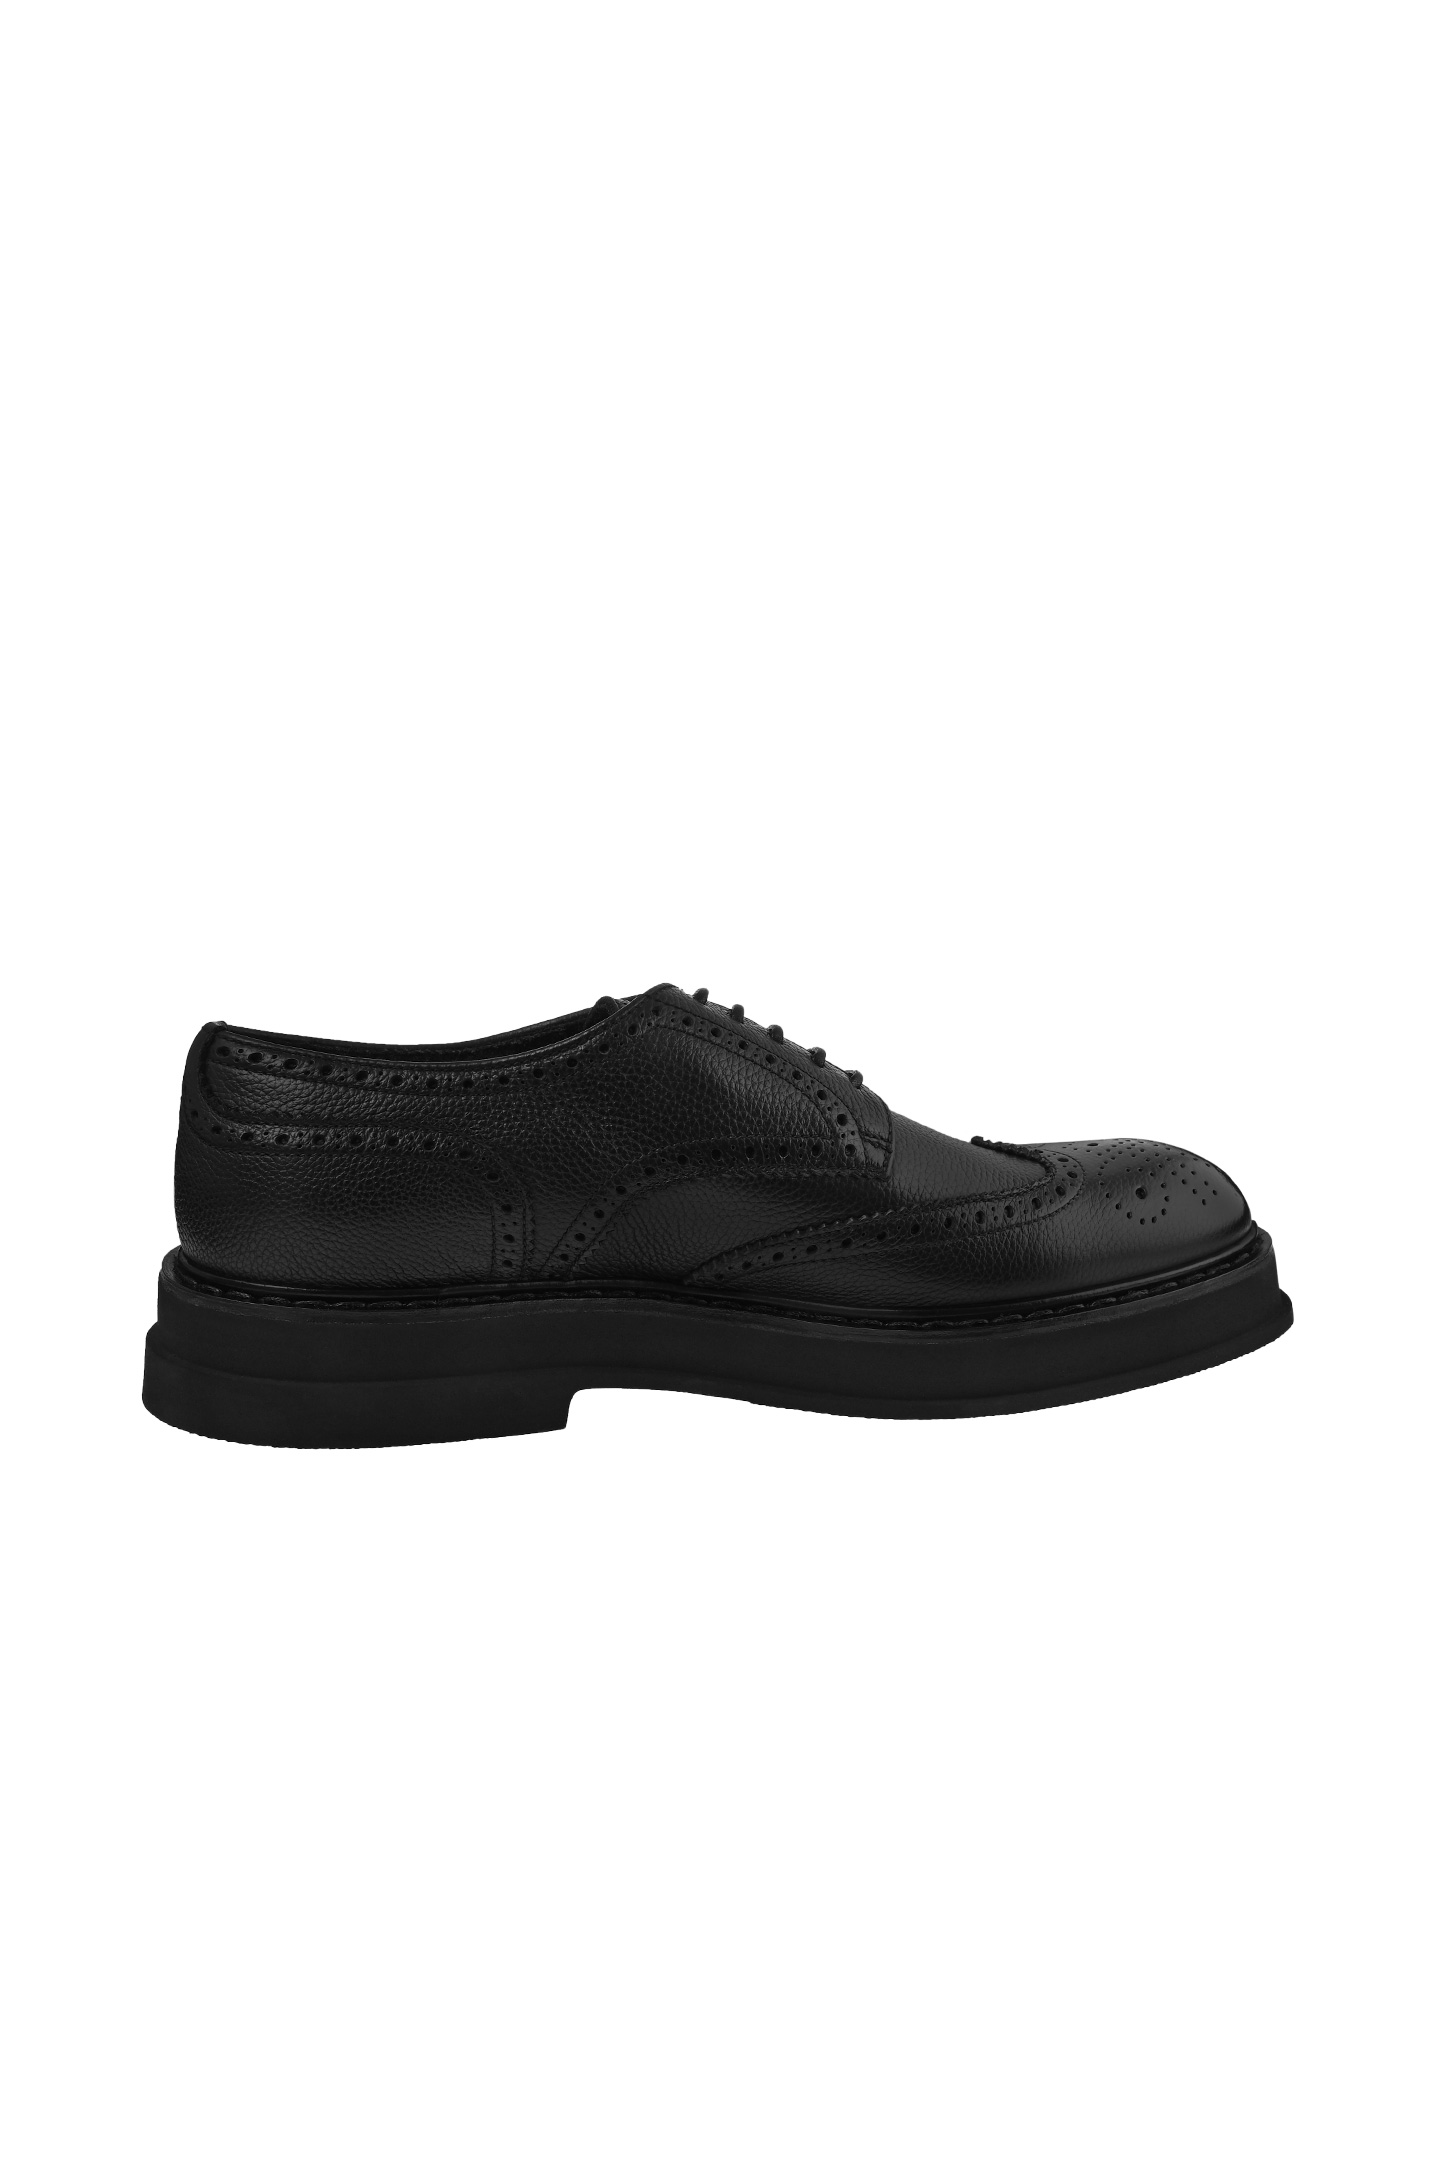 Туфли DOUCAL'S DU1367CUBOUT019, цвет: Черный, Мужской